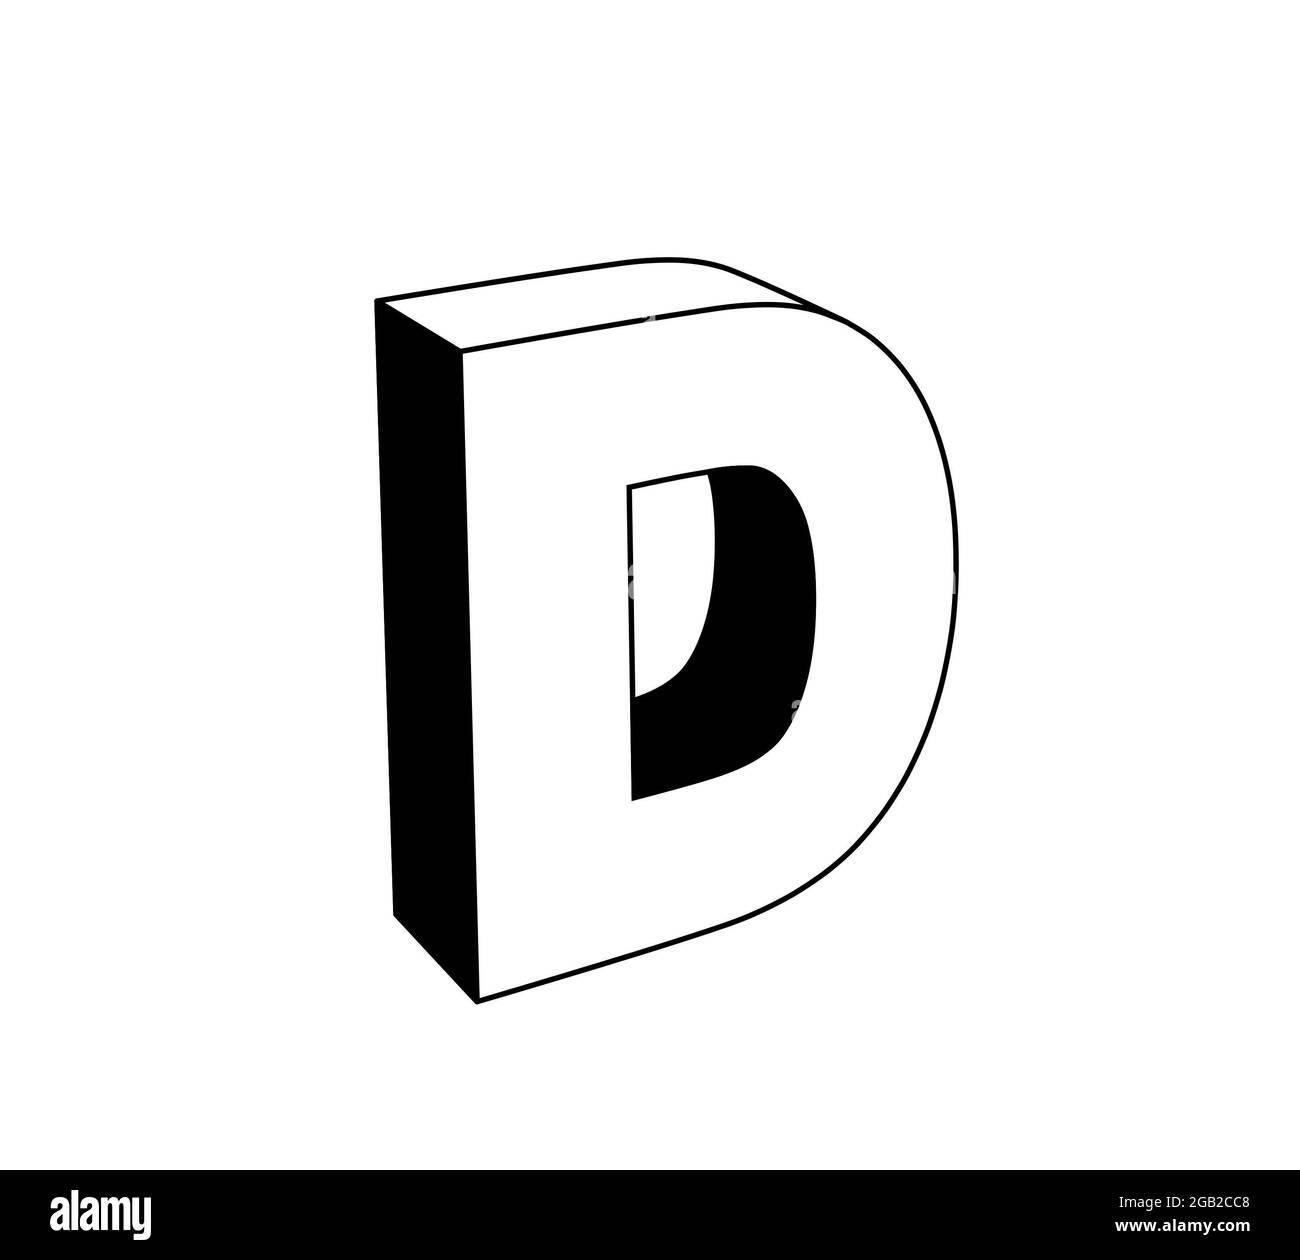 Buchstabe d, schwarz-weiße 3D-Illustration isoliert auf weißem Hintergrund.  Perspektivische Ansicht Stockfotografie - Alamy